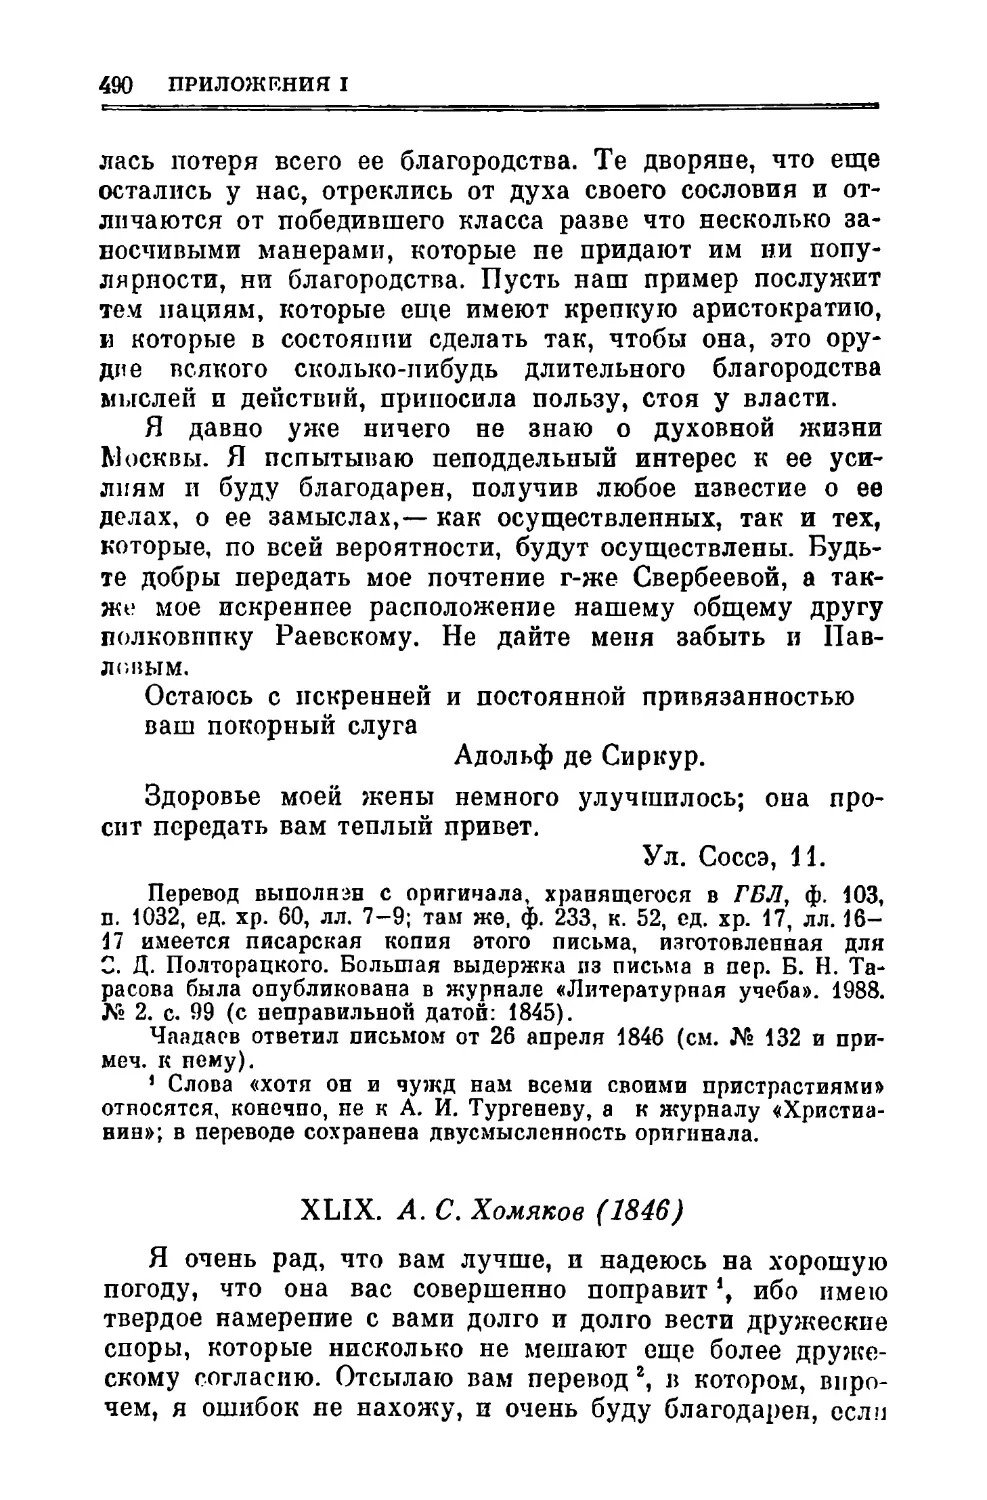 XLIX. Хомяков А.С. 1846